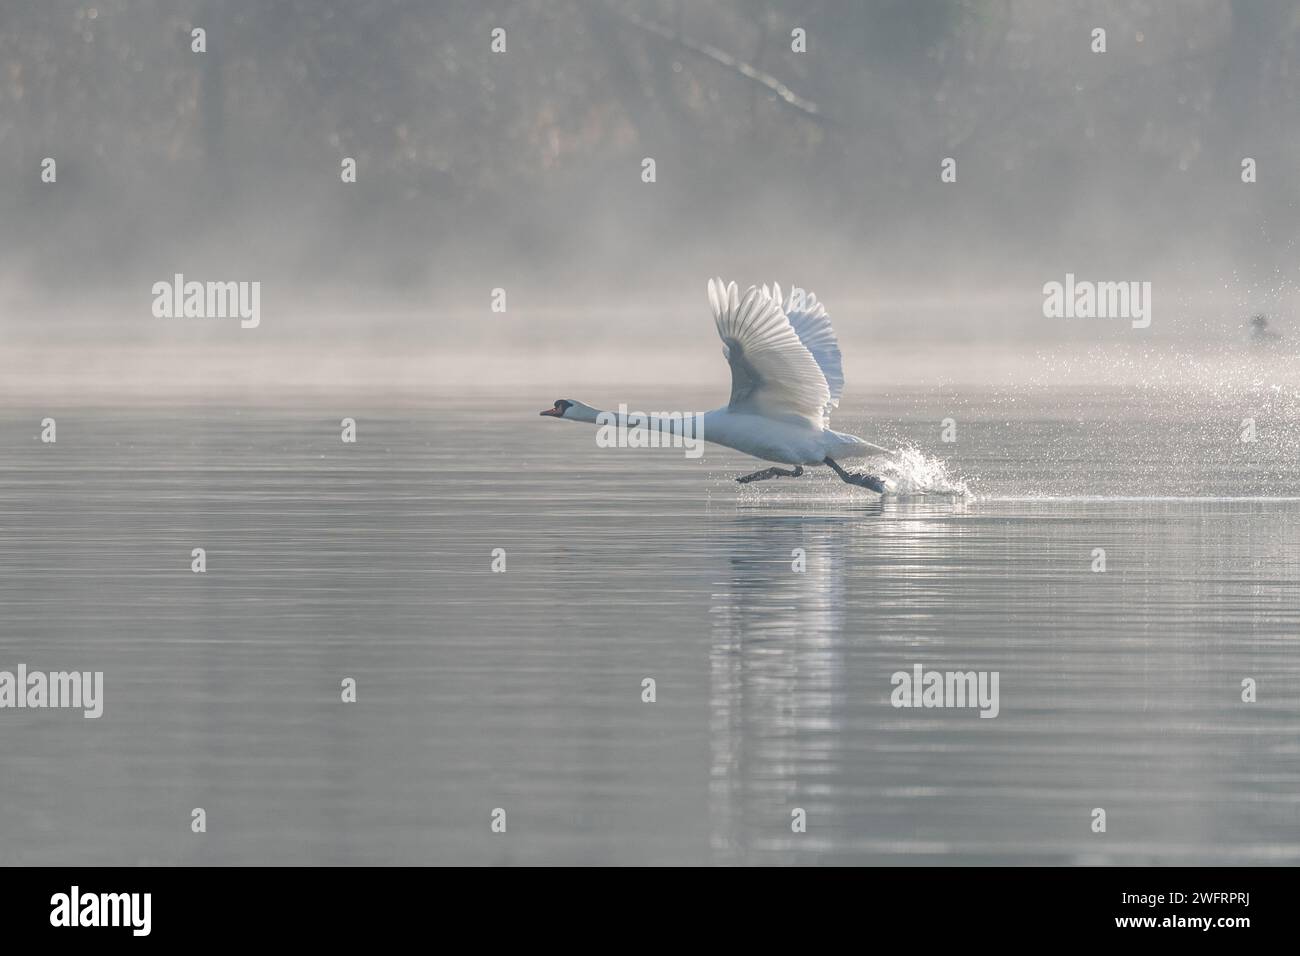 Cygne muet (Cygnus olor) au décollage sur l'eau d'un lac, Bas-Rhin, Alsace, Grand est, France, Europe Banque D'Images